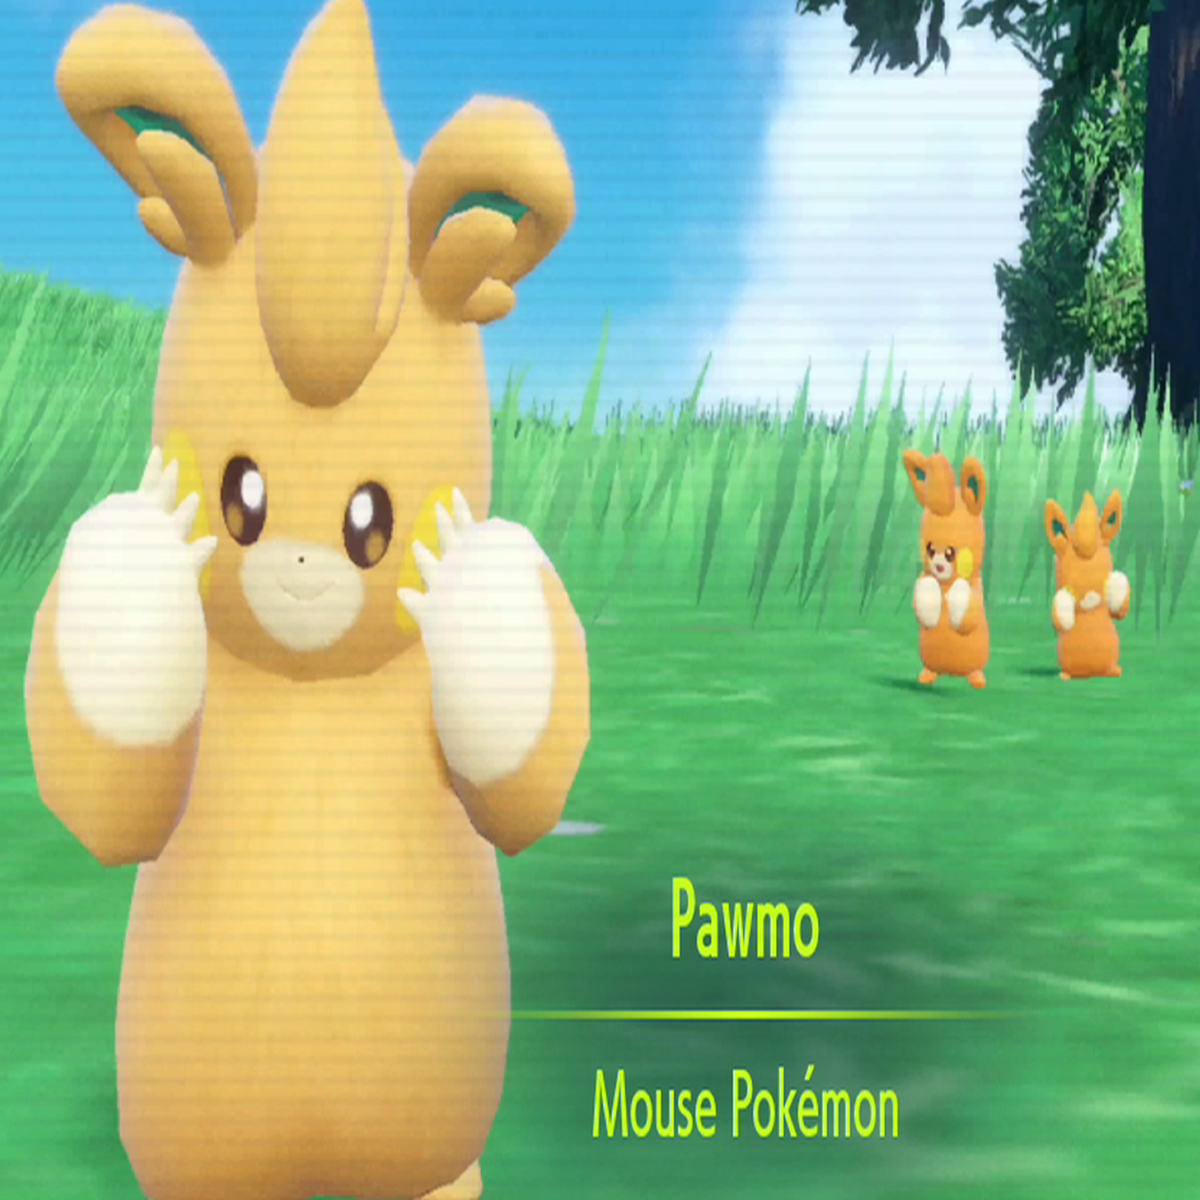 Pokemon GO Shiny Pawmi, Shiny Pawmo, and Shiny Pawmot guide